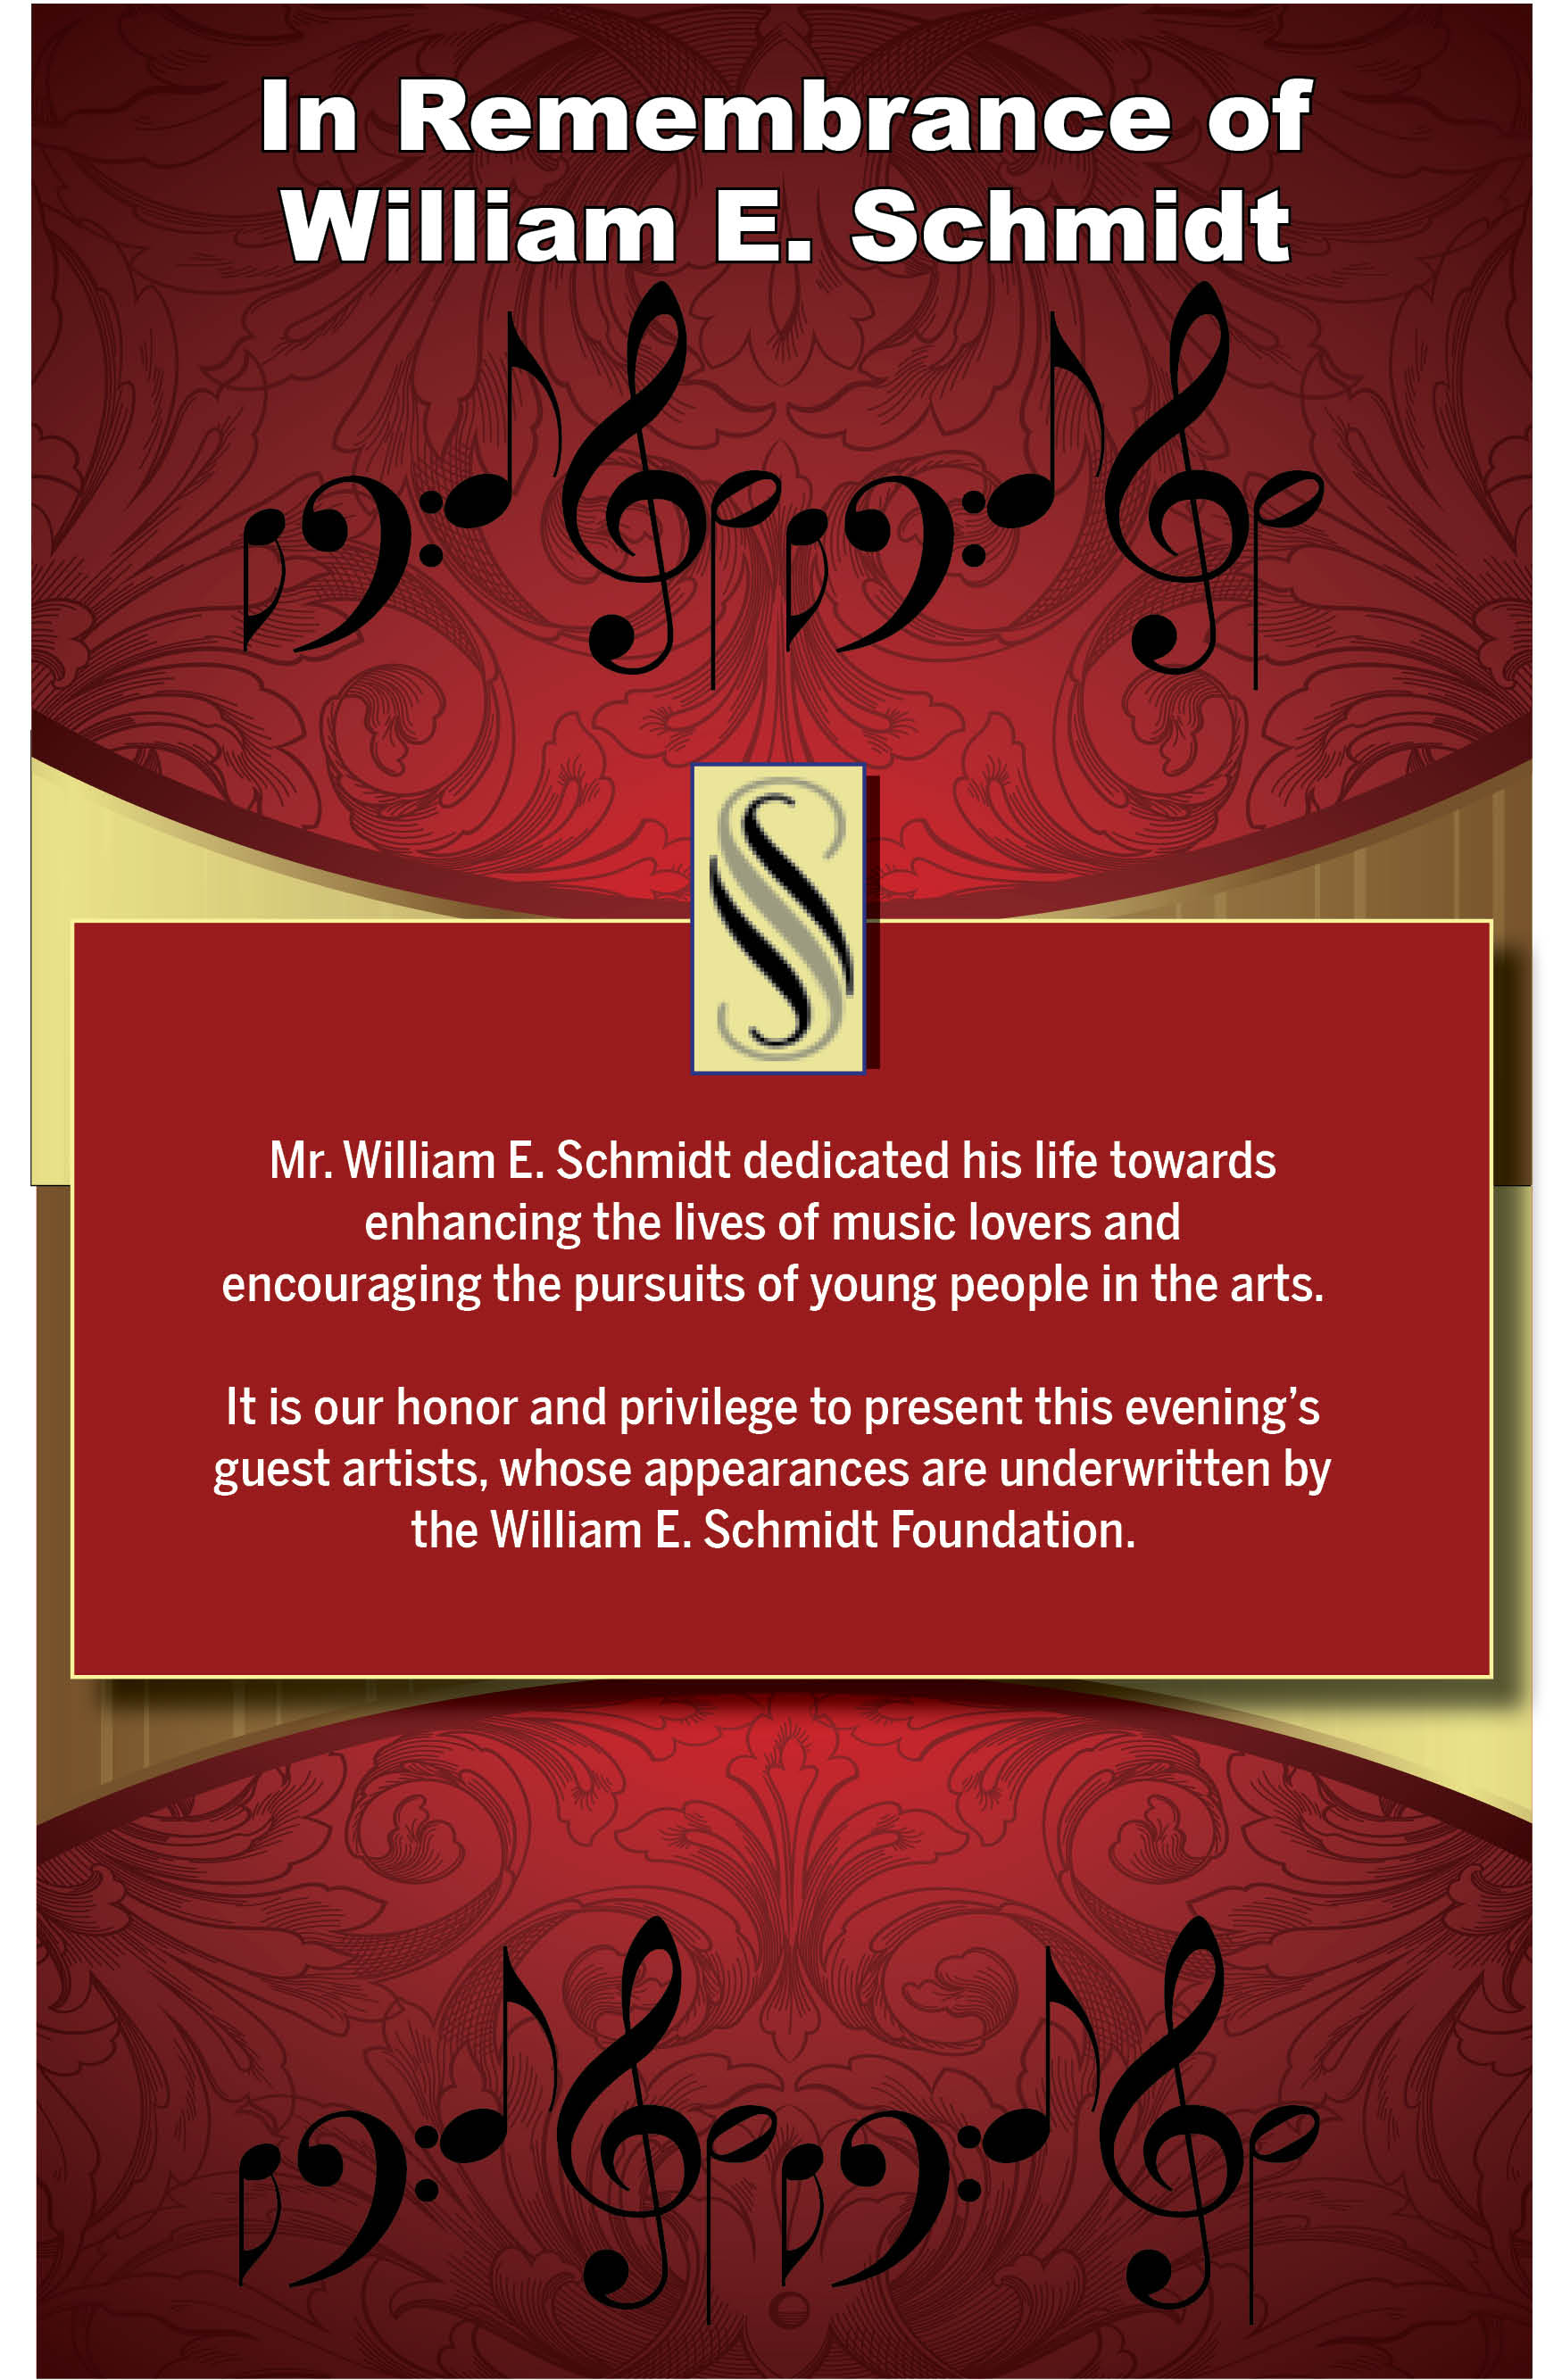 William E. Schmidt Foundation